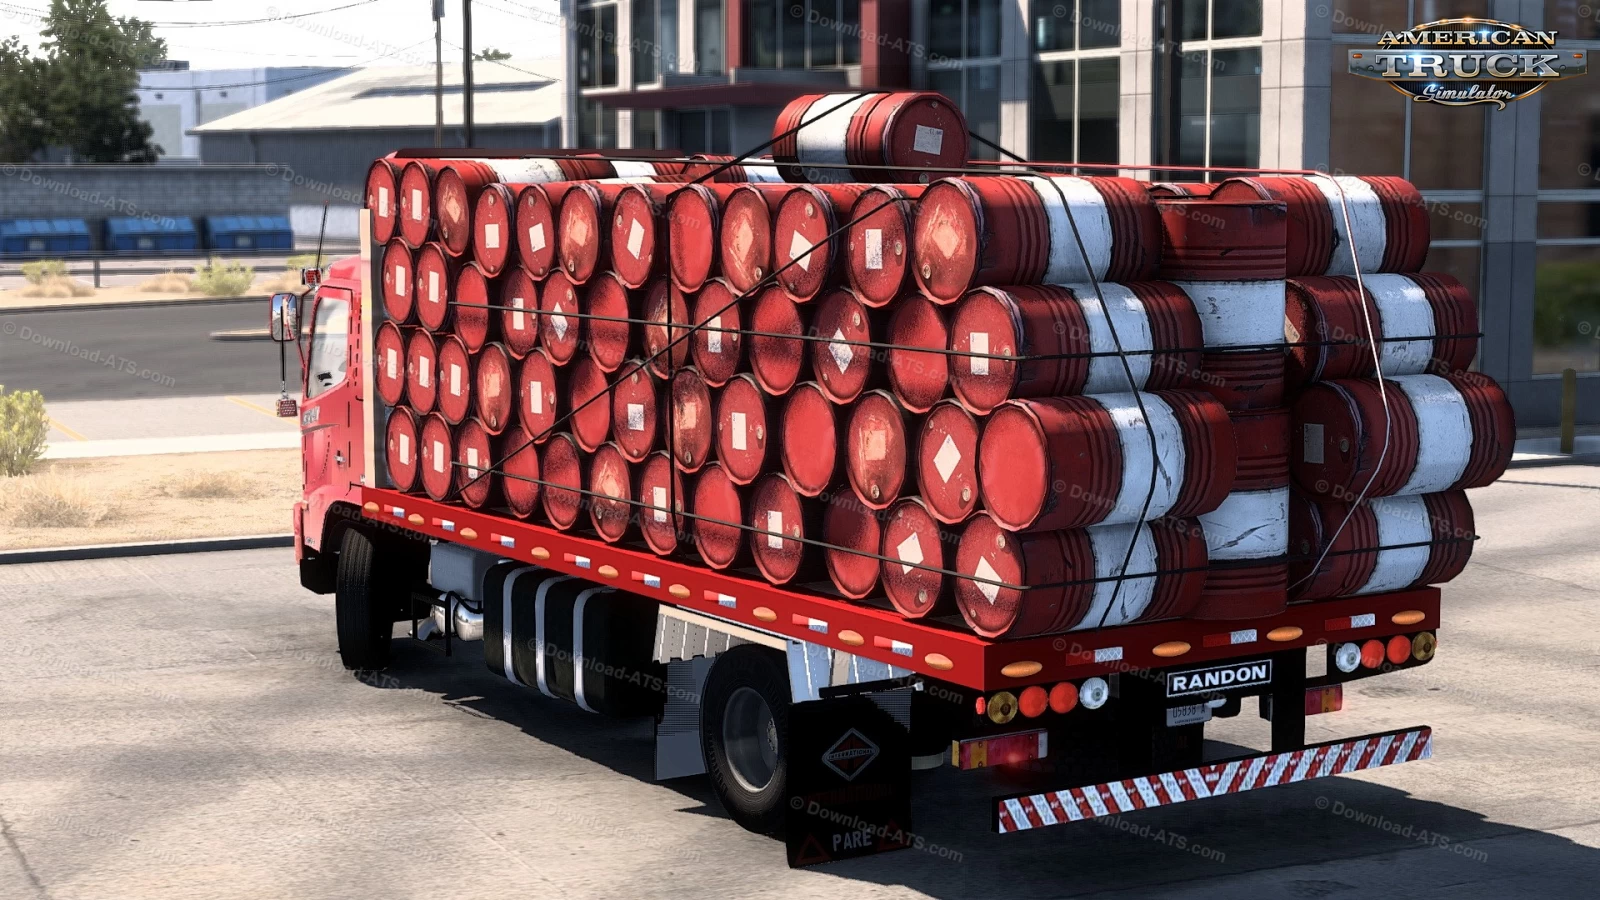 Hino 500 Truck + Cargos v1.1 (1.43.x) for ATS